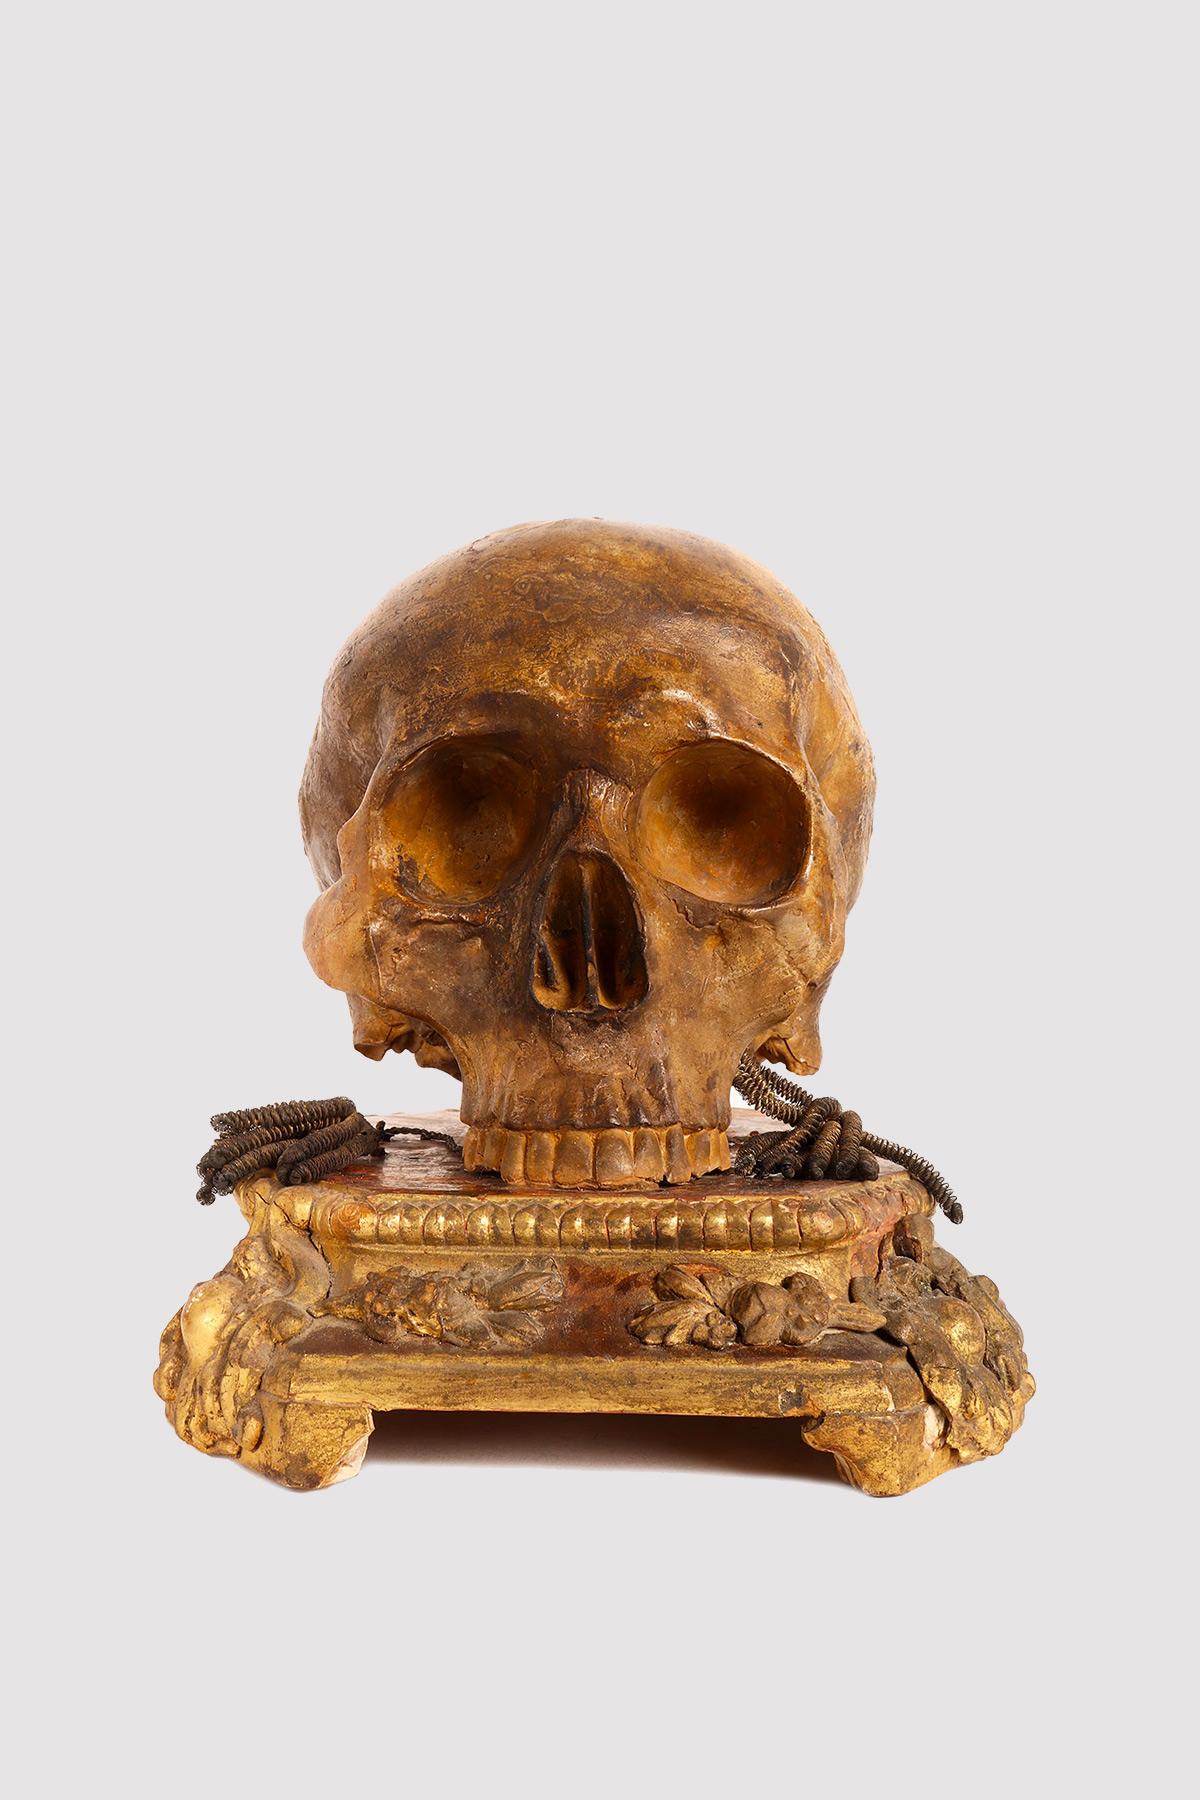 Au-dessus de la base en bois doré se trouve une Vanitas, une sculpture en plâtre peint représentant un crâne humain. Italie, début du 19e siècle.